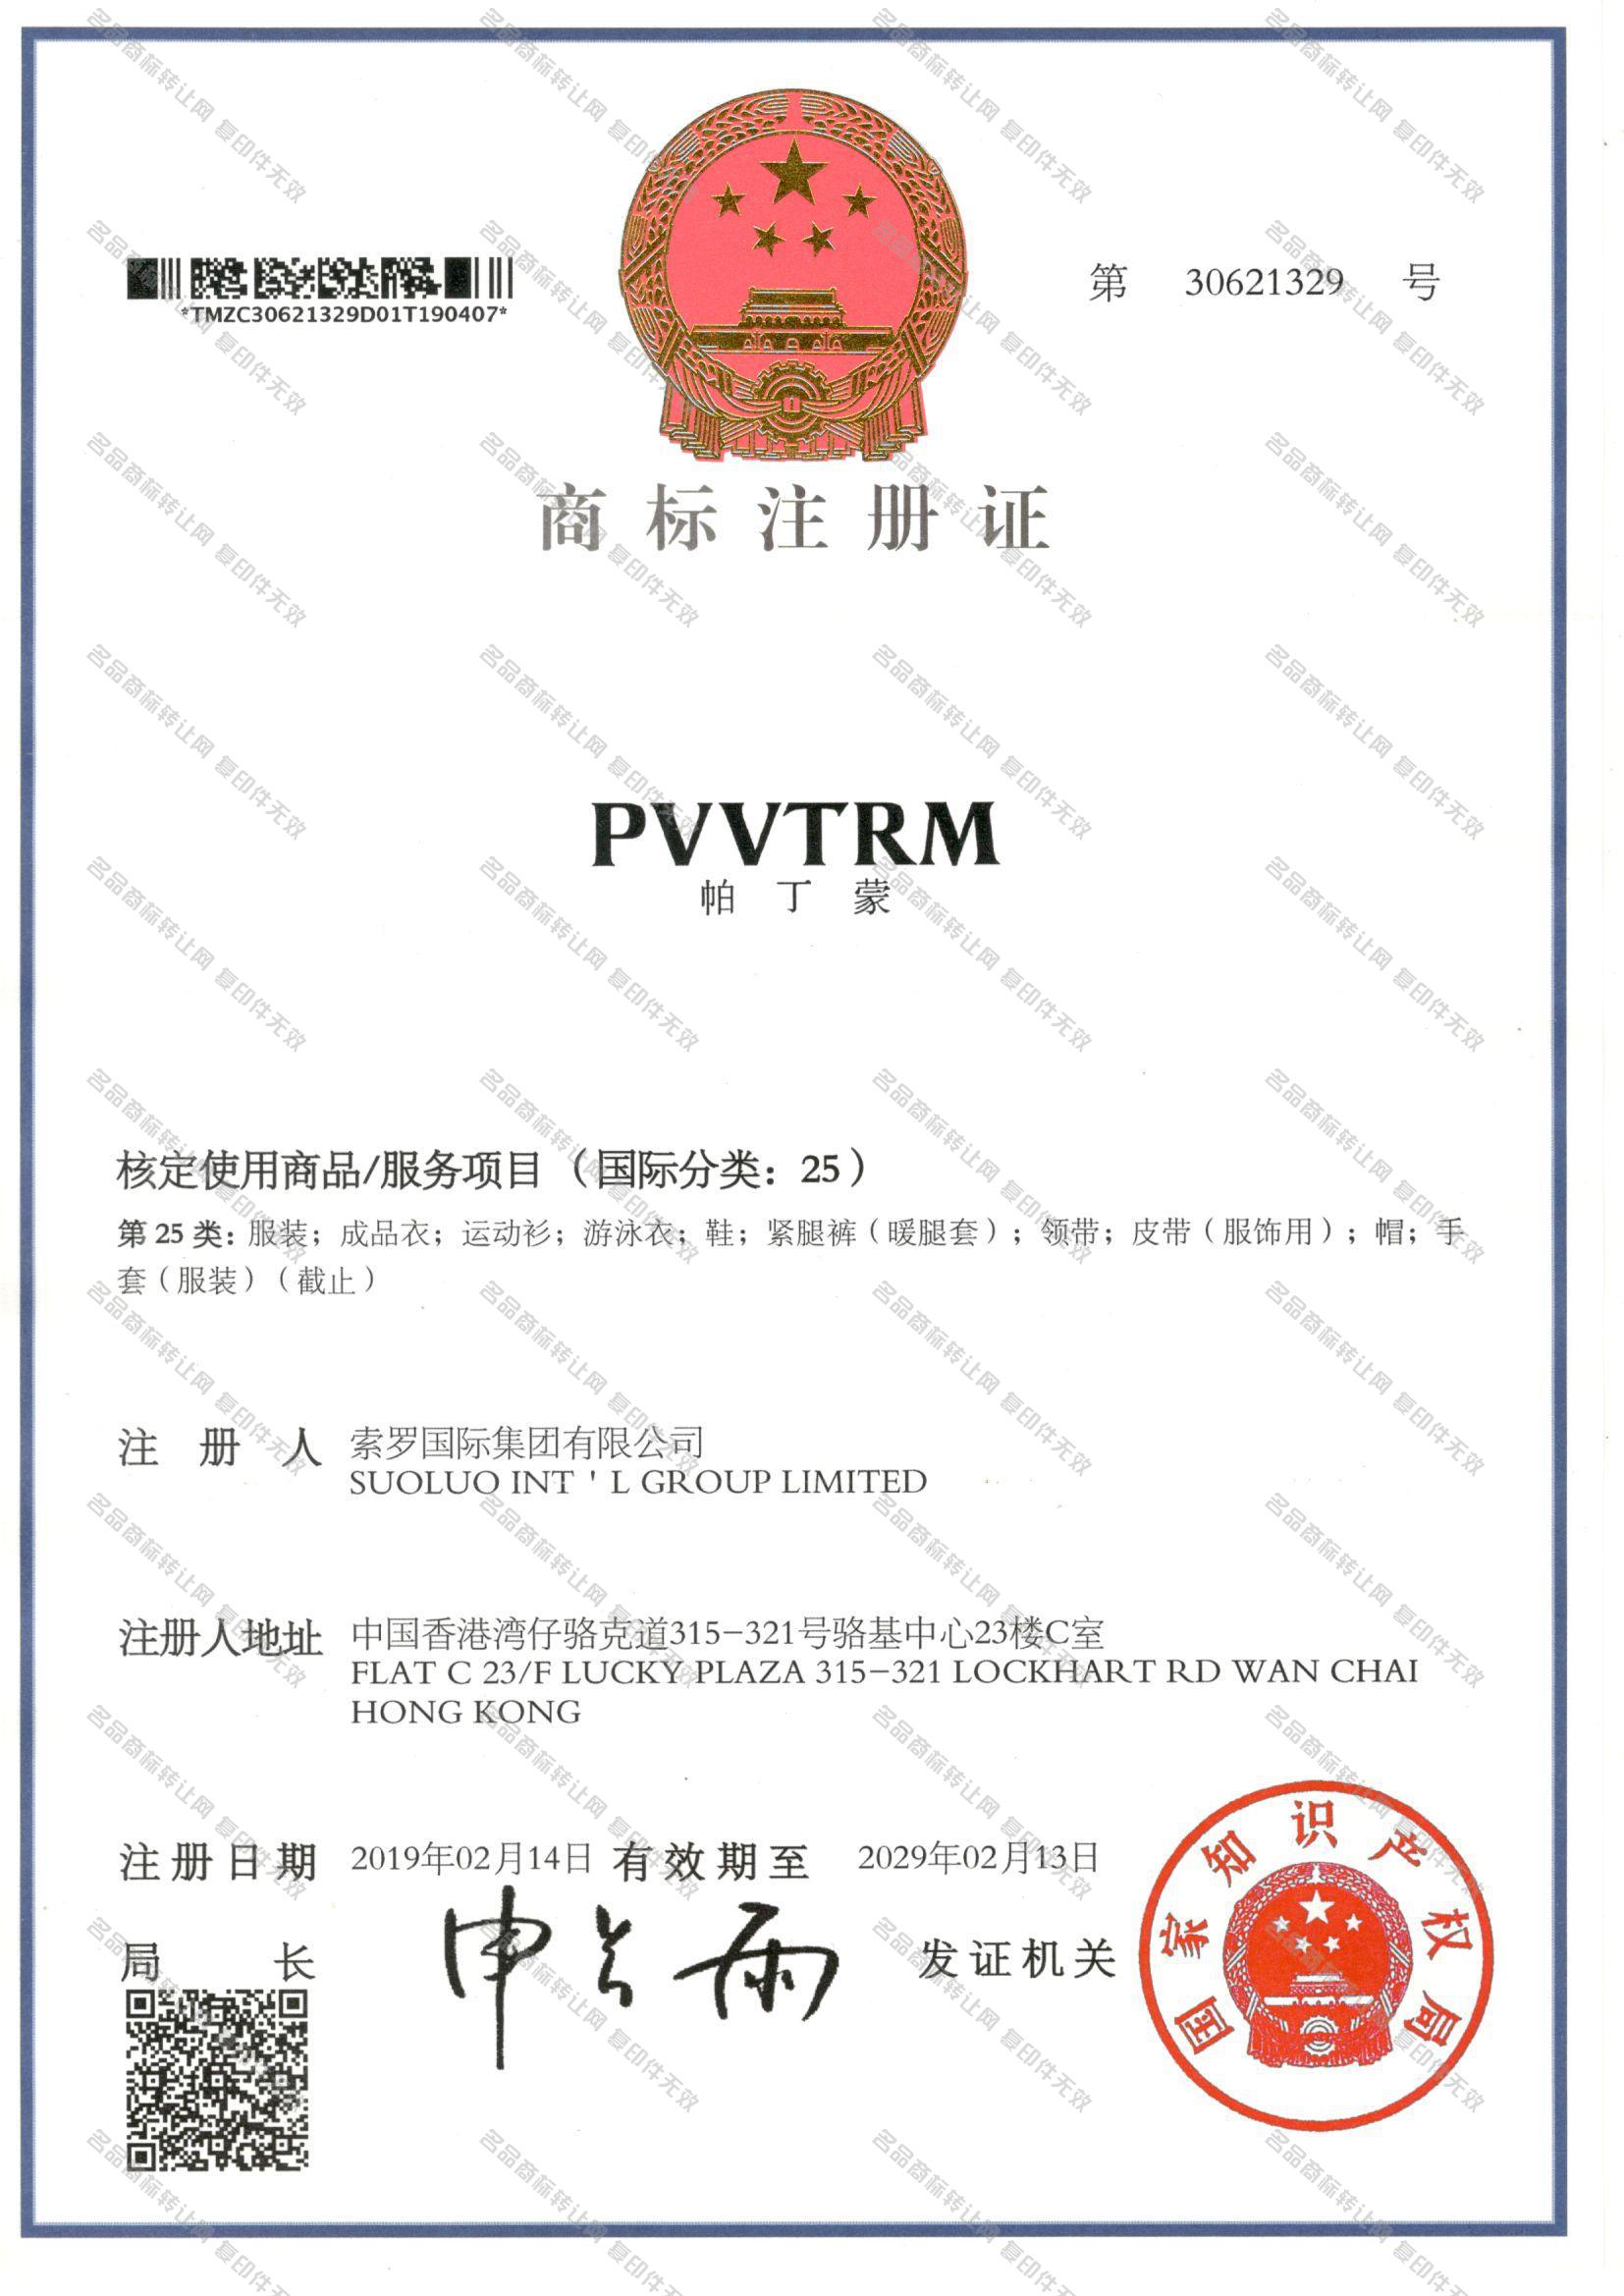 帕丁蒙 PVVTRM注册证